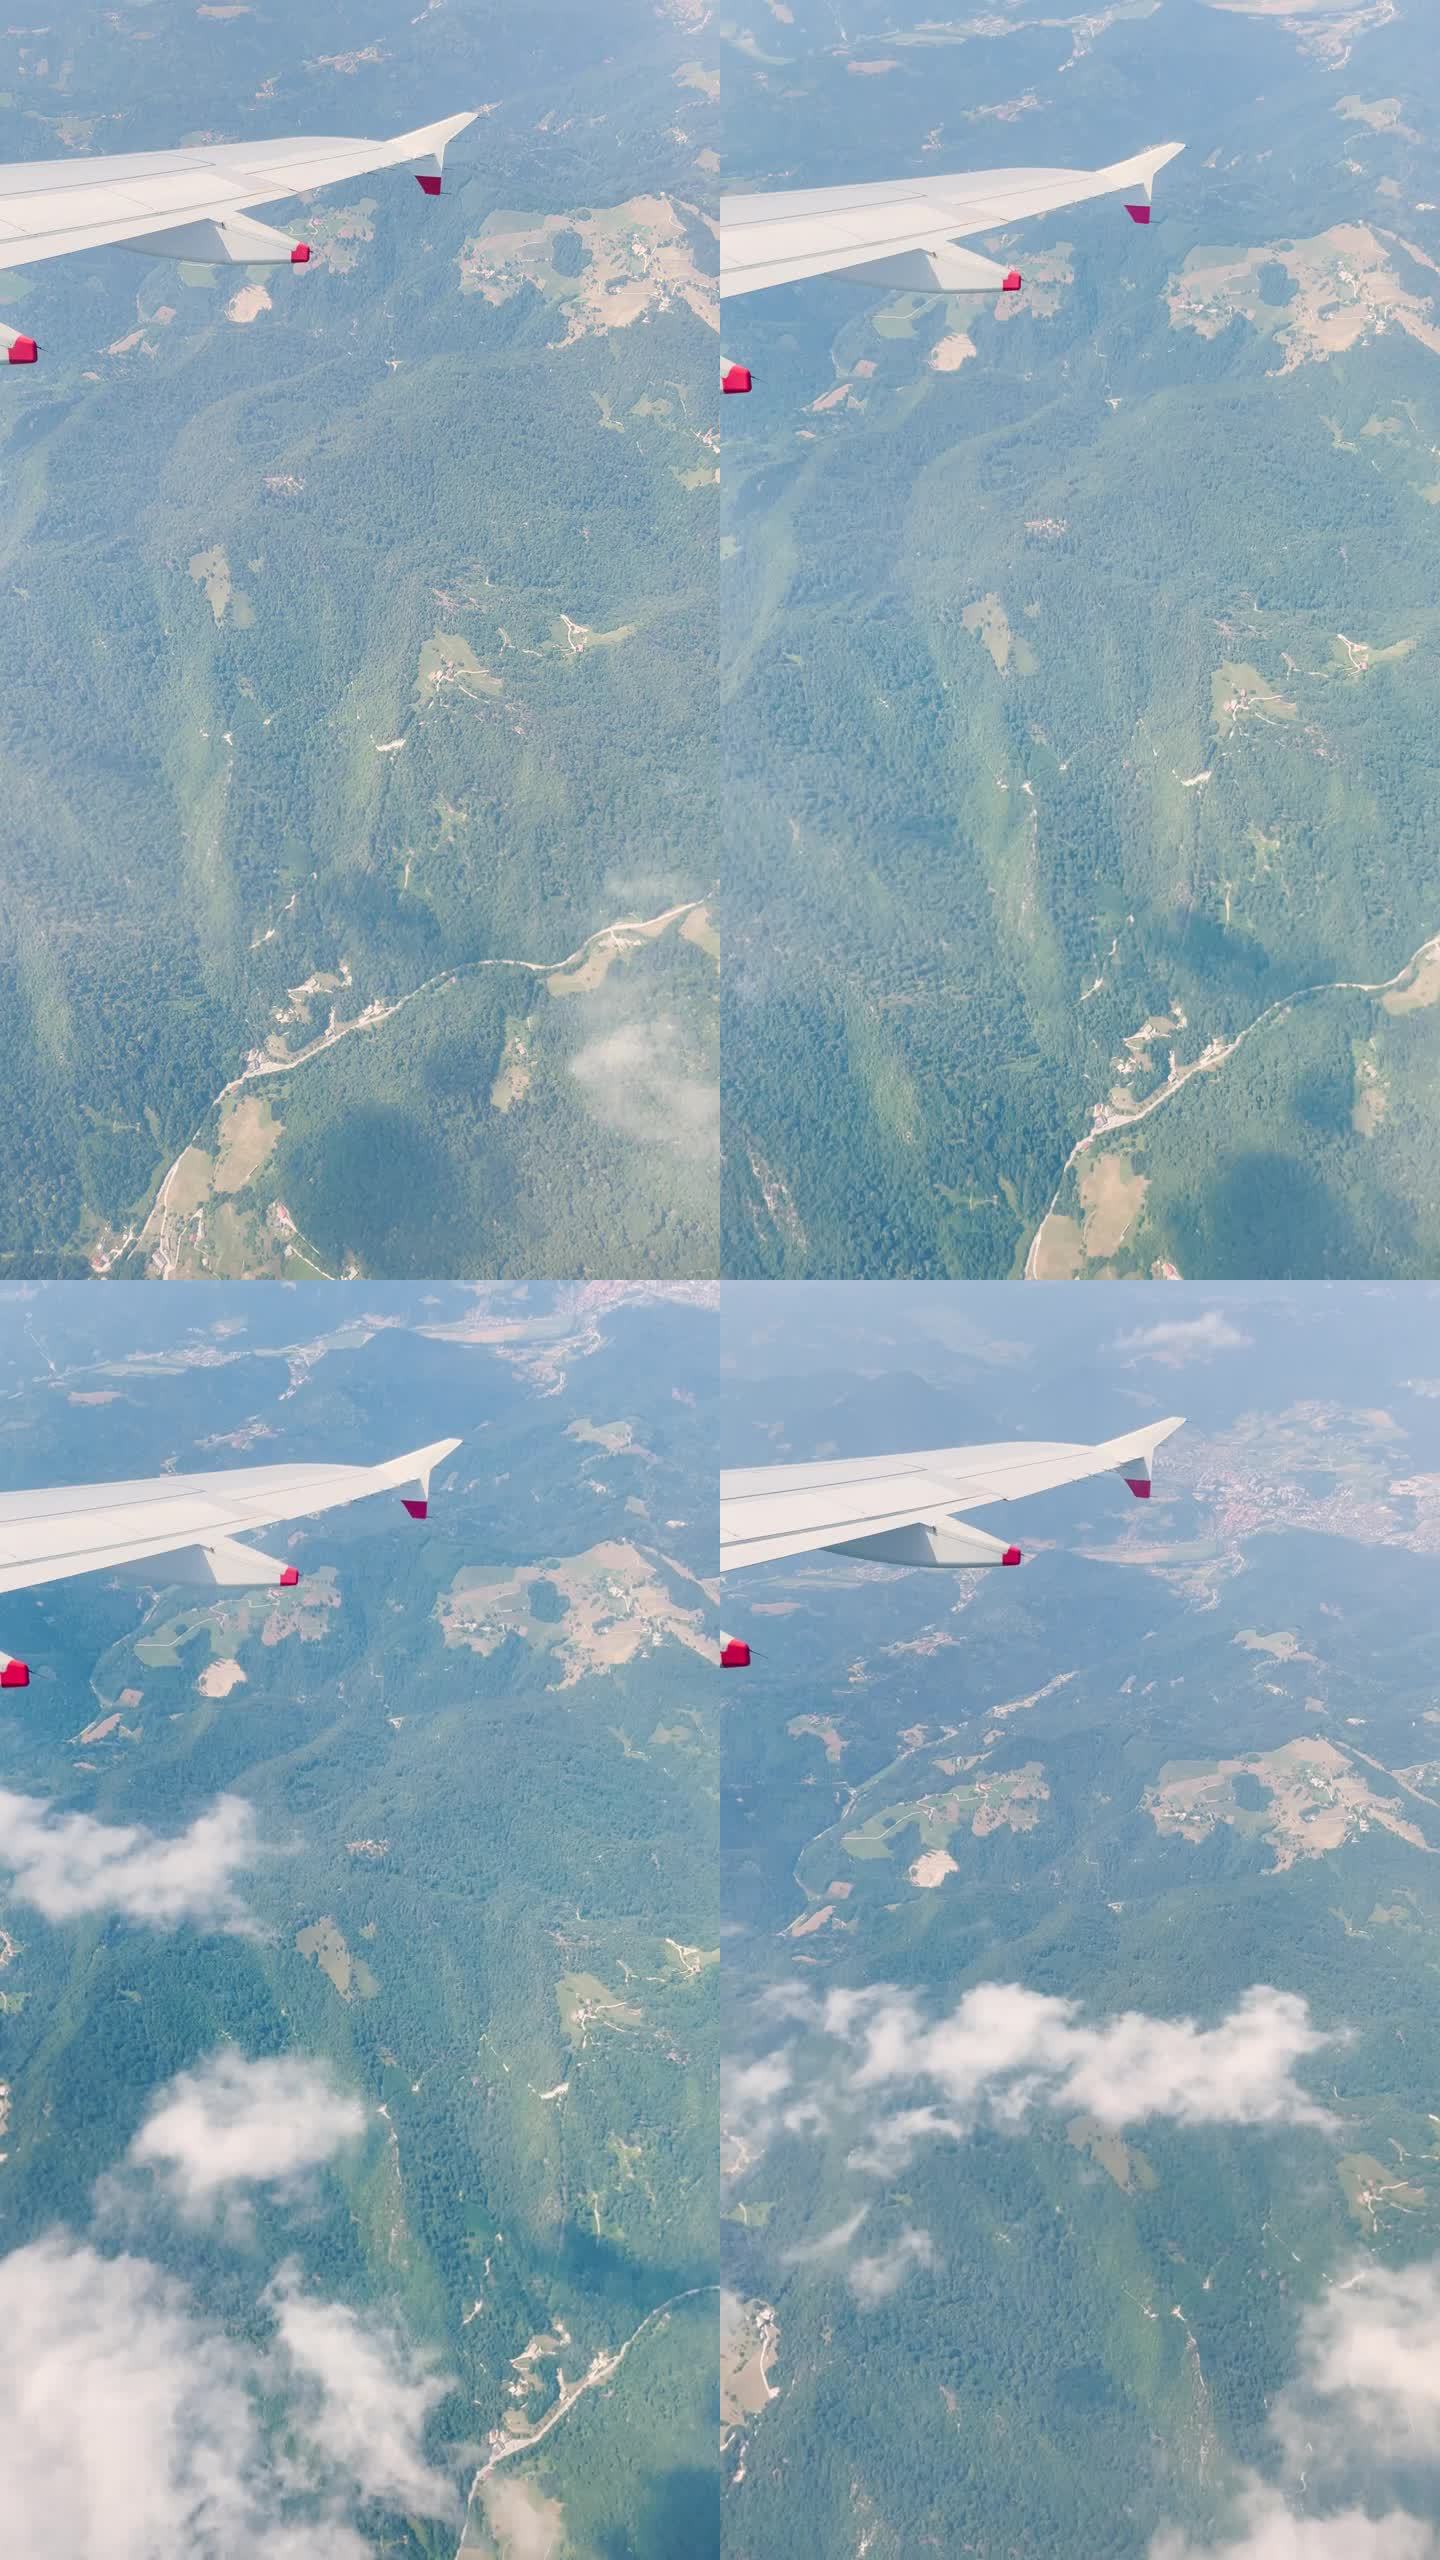 垂直视角:乘飞机旅行时，斯洛文尼亚的美景令人惊叹